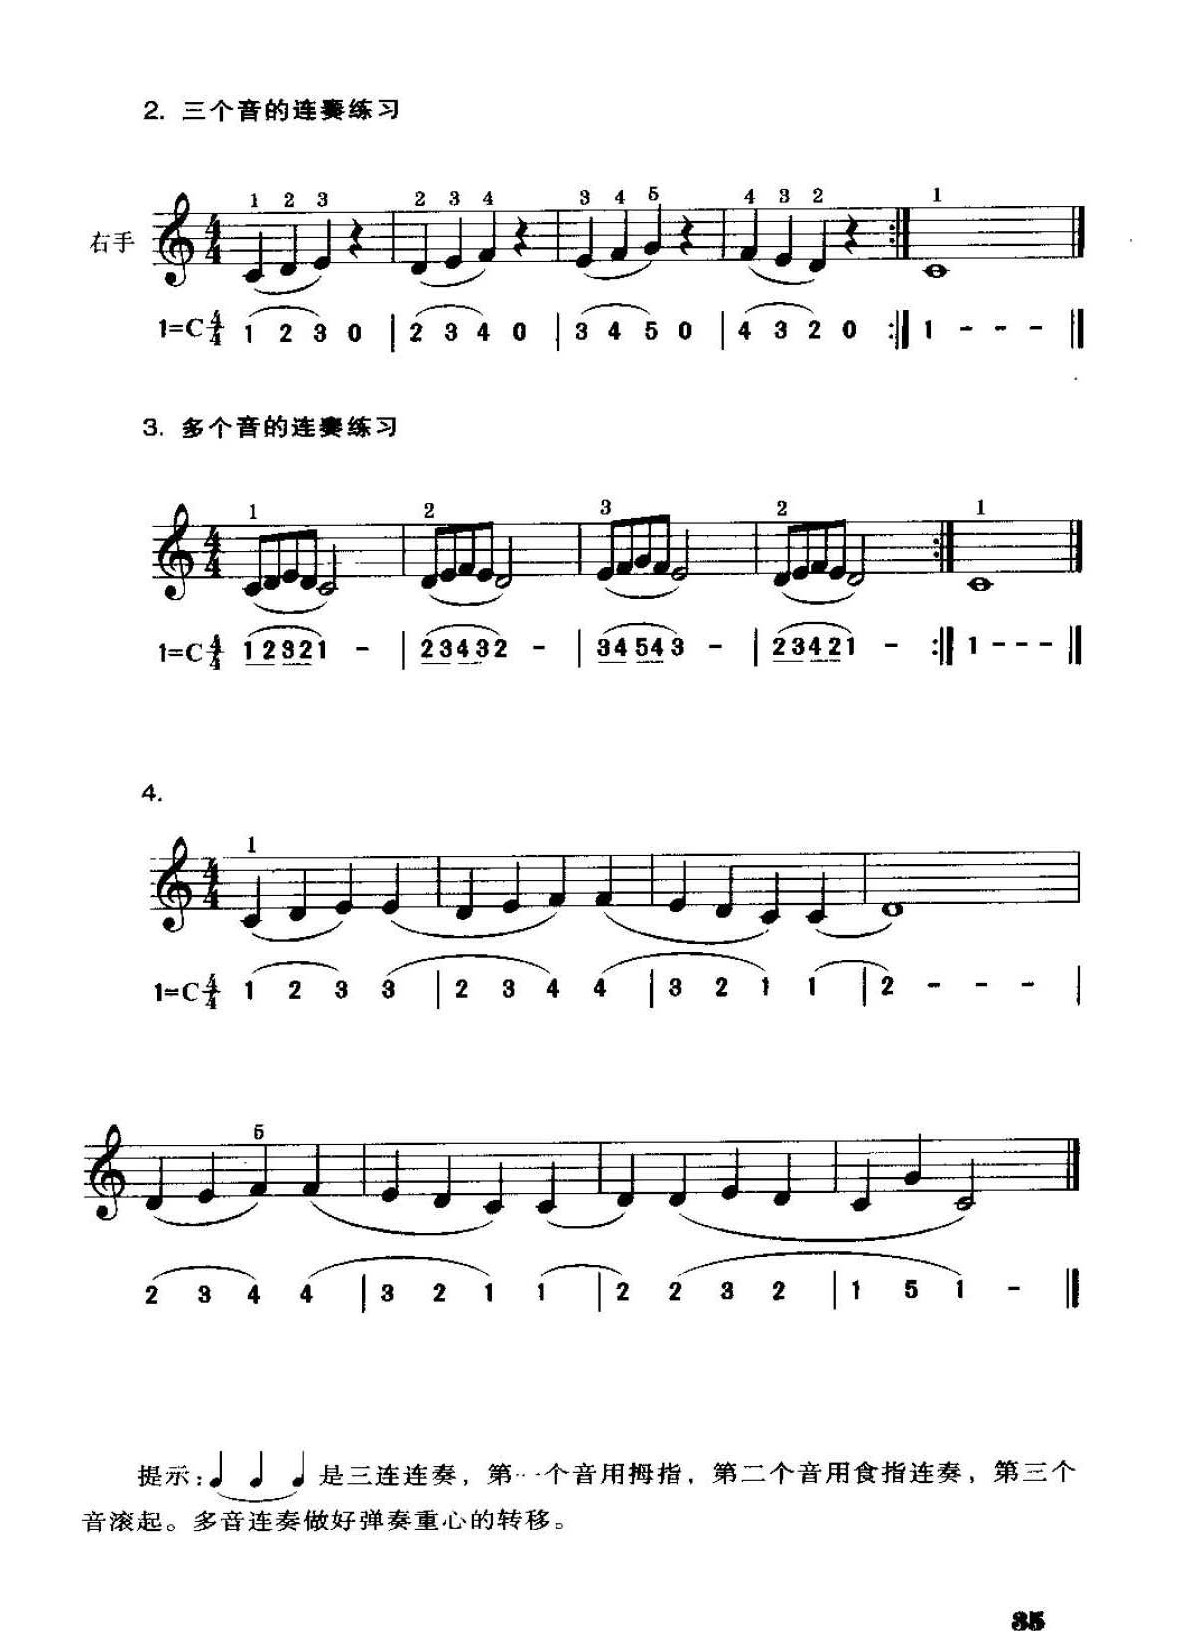 电子琴连音奏法及练习曲3首